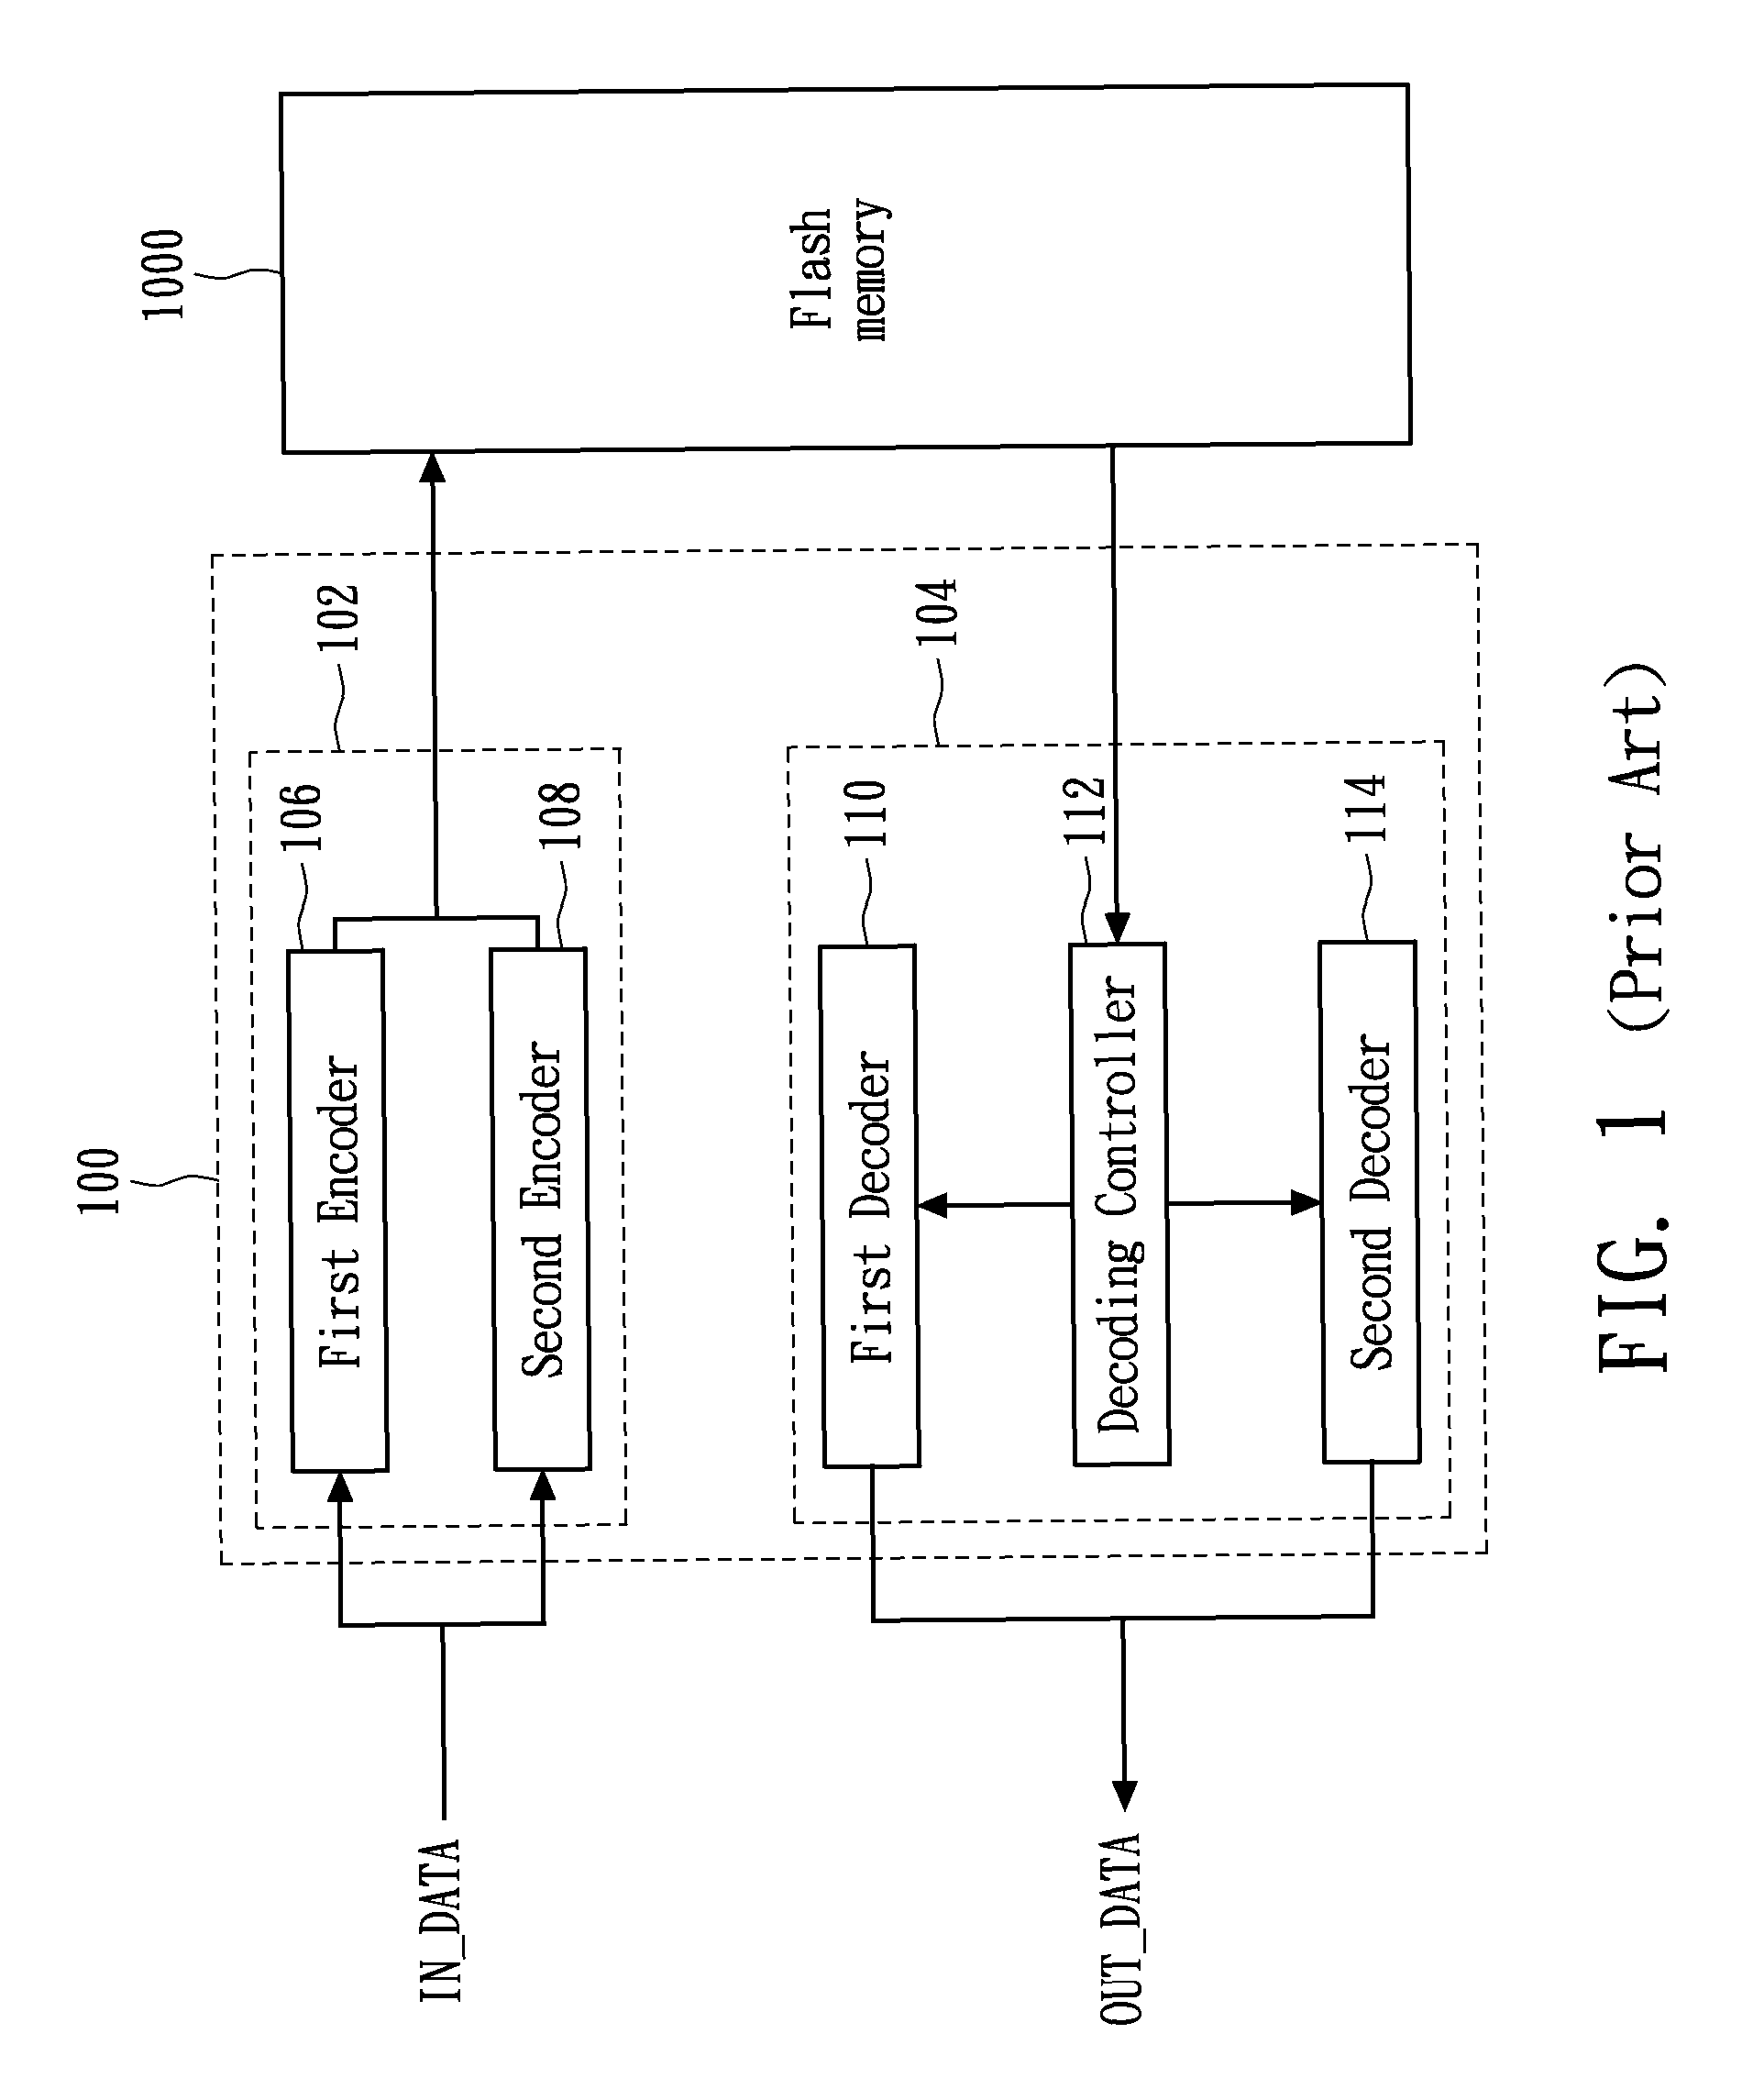 Methods and systems of a flash memory controller and an error correction code (ECC) controller using variable-length segmented ECC data